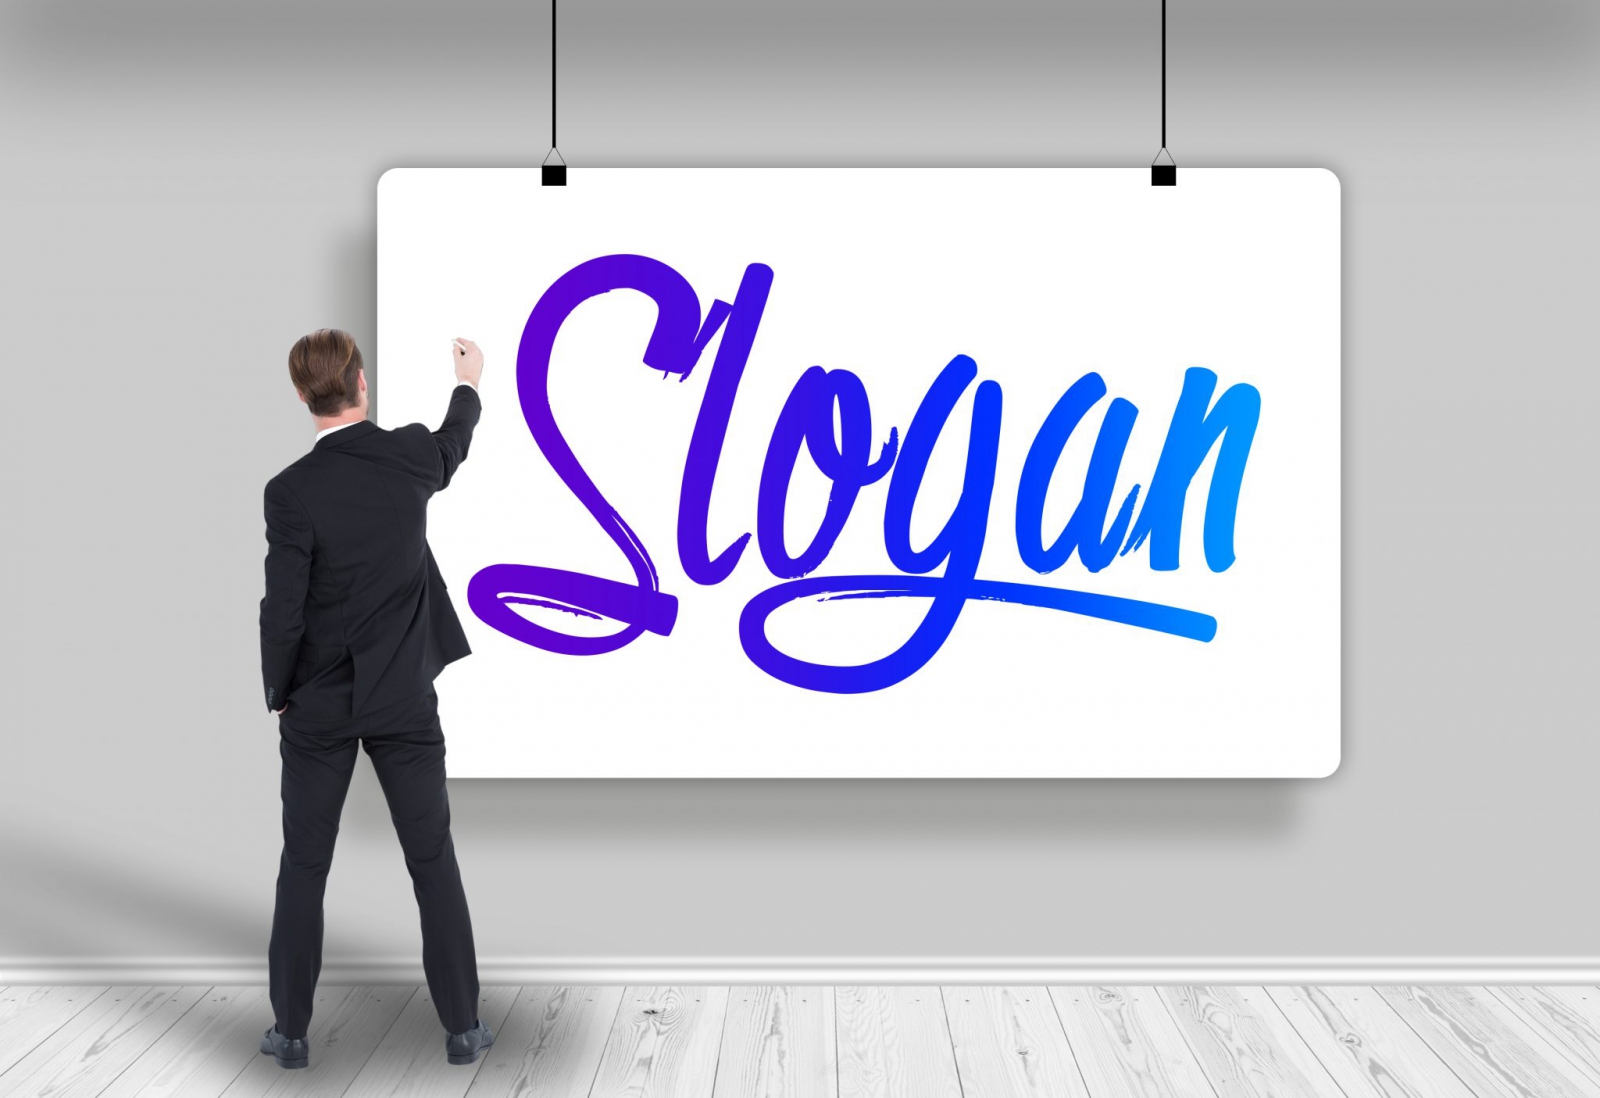 Slogan là câu khẩu hiệu gắn kết thương mại giữa doanh nghiệp và khách hàng